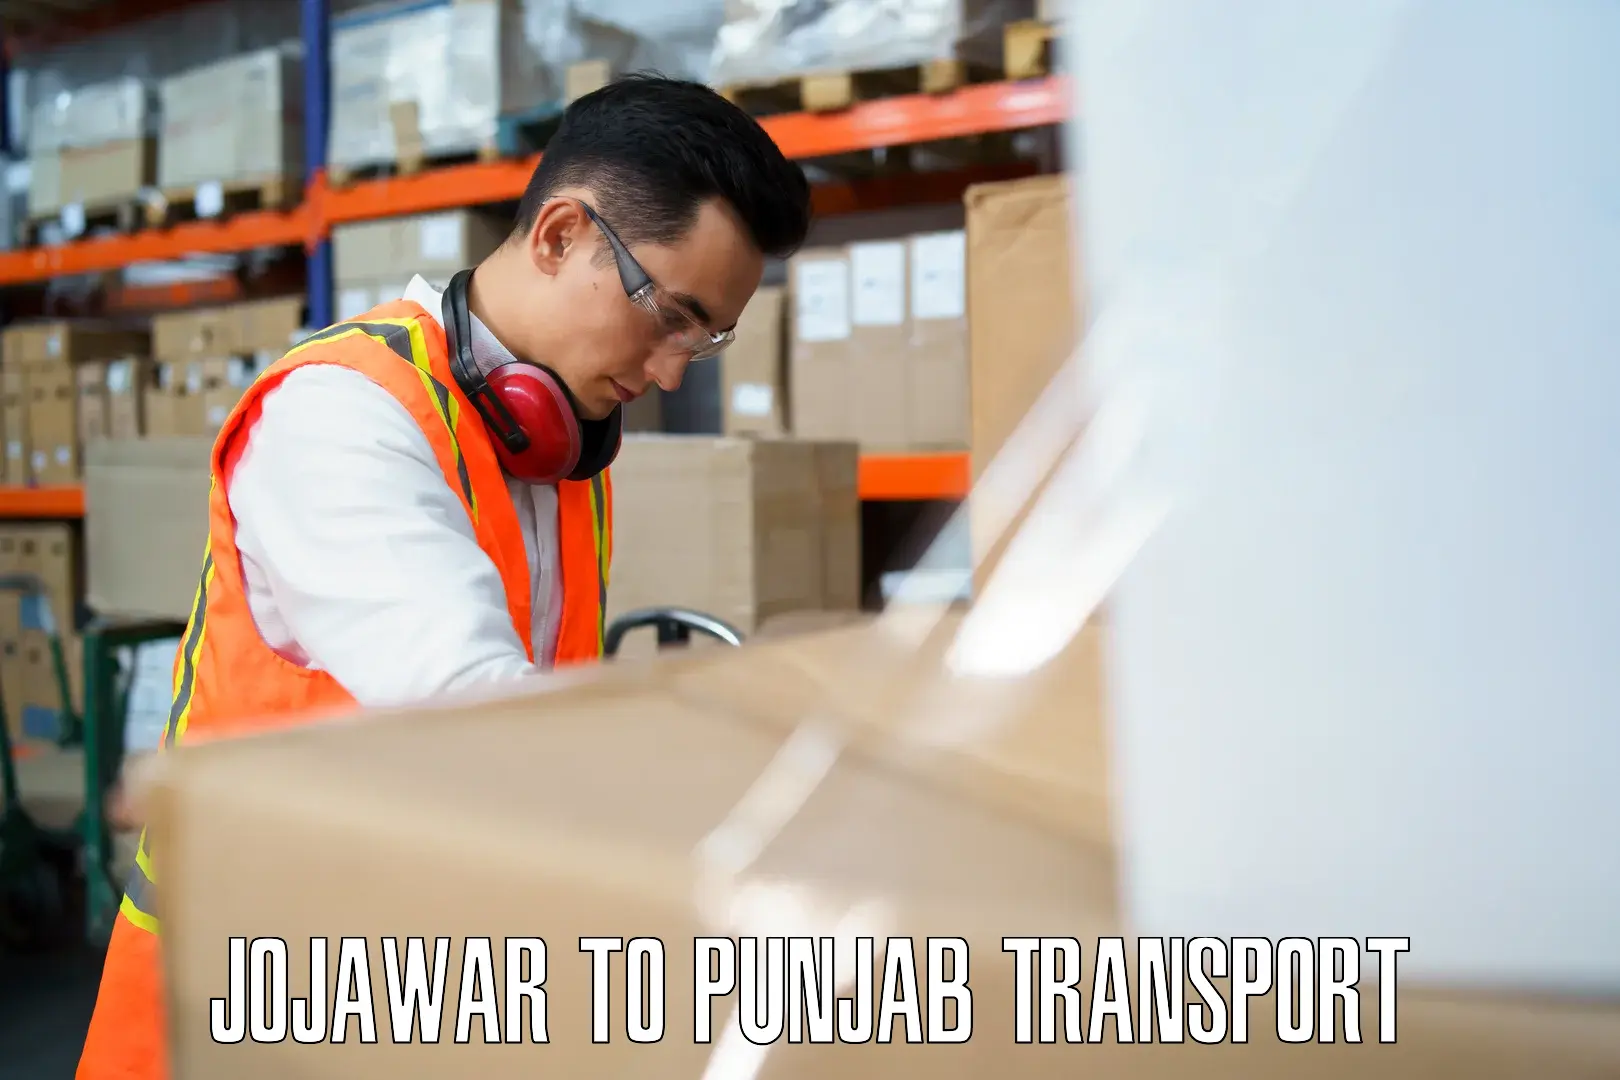 Commercial transport service Jojawar to Faridkot